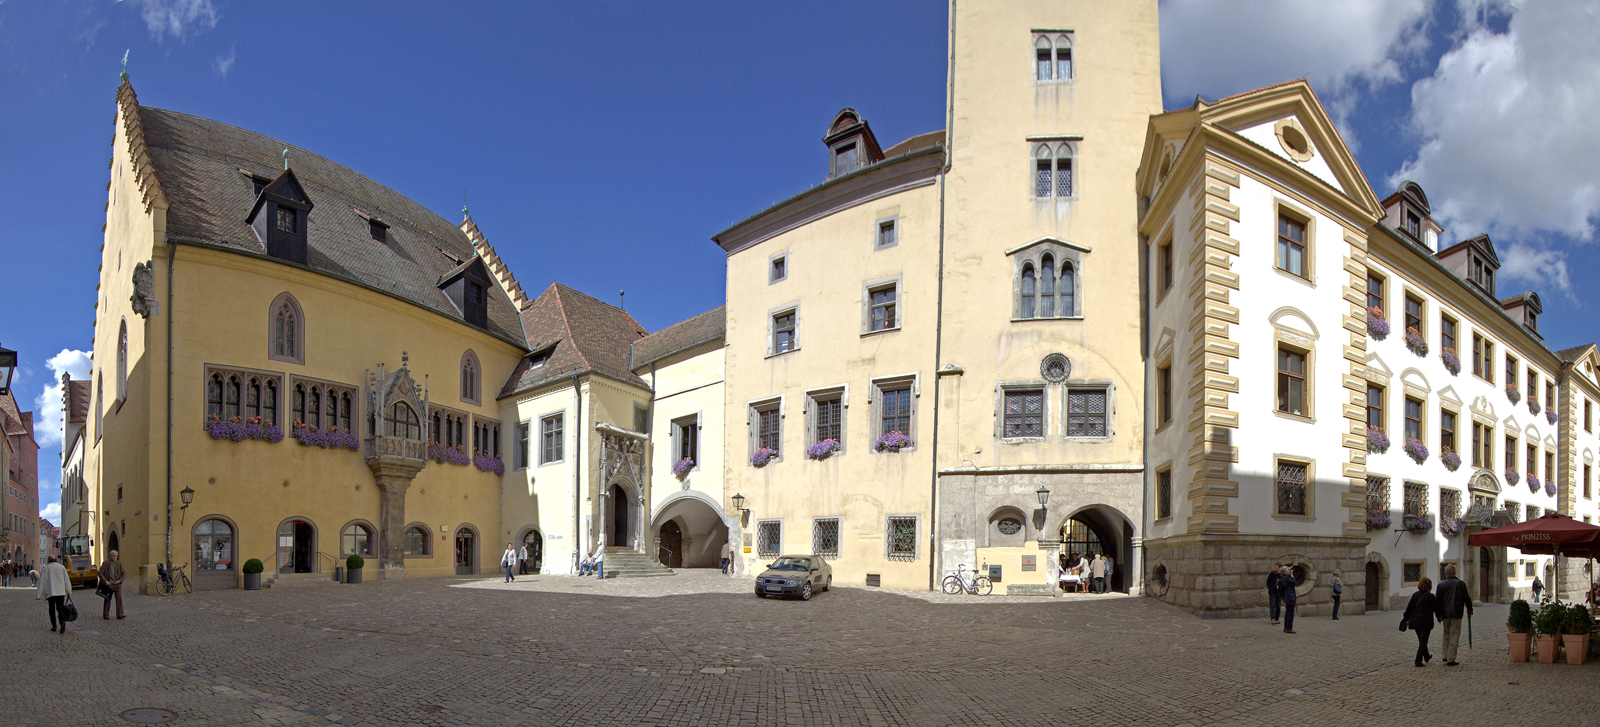 Wiki_Regensburg-altes-rathaus-rathausplatz